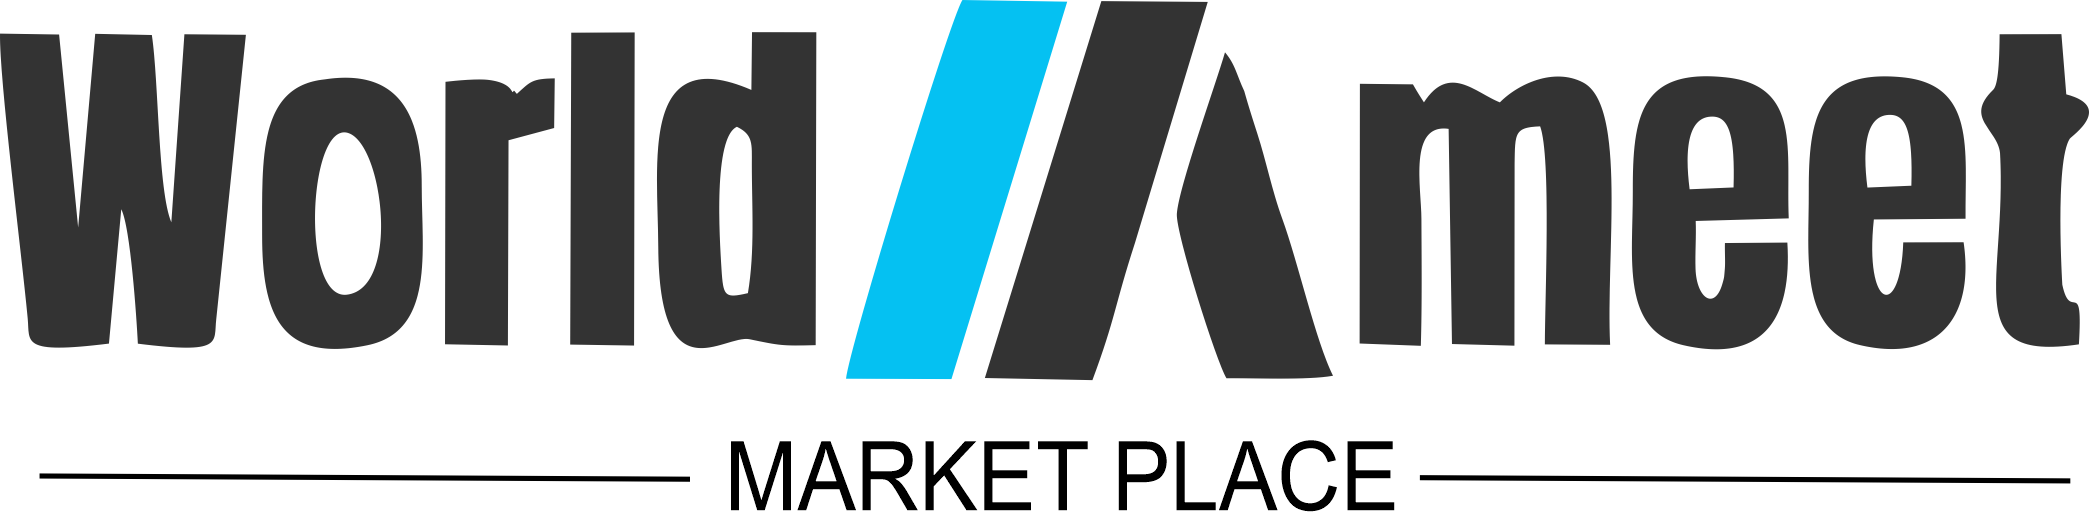 WORLD MEET MARKET Logo